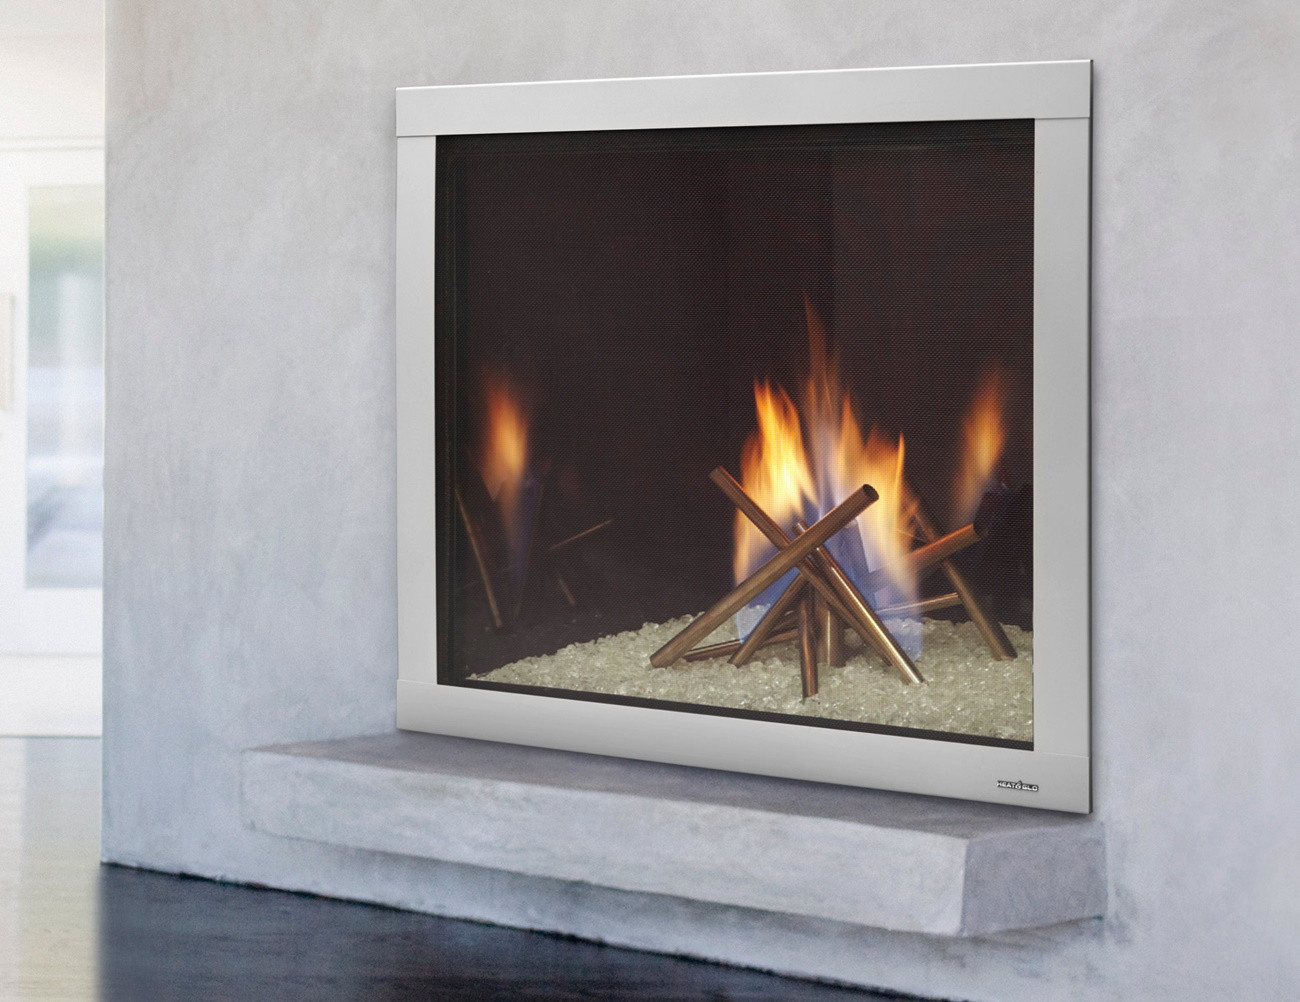 Best ideas about Modern Gas Fireplace Insert
. Save or Pin Natural Modern Gas Fireplace Inserts Now.